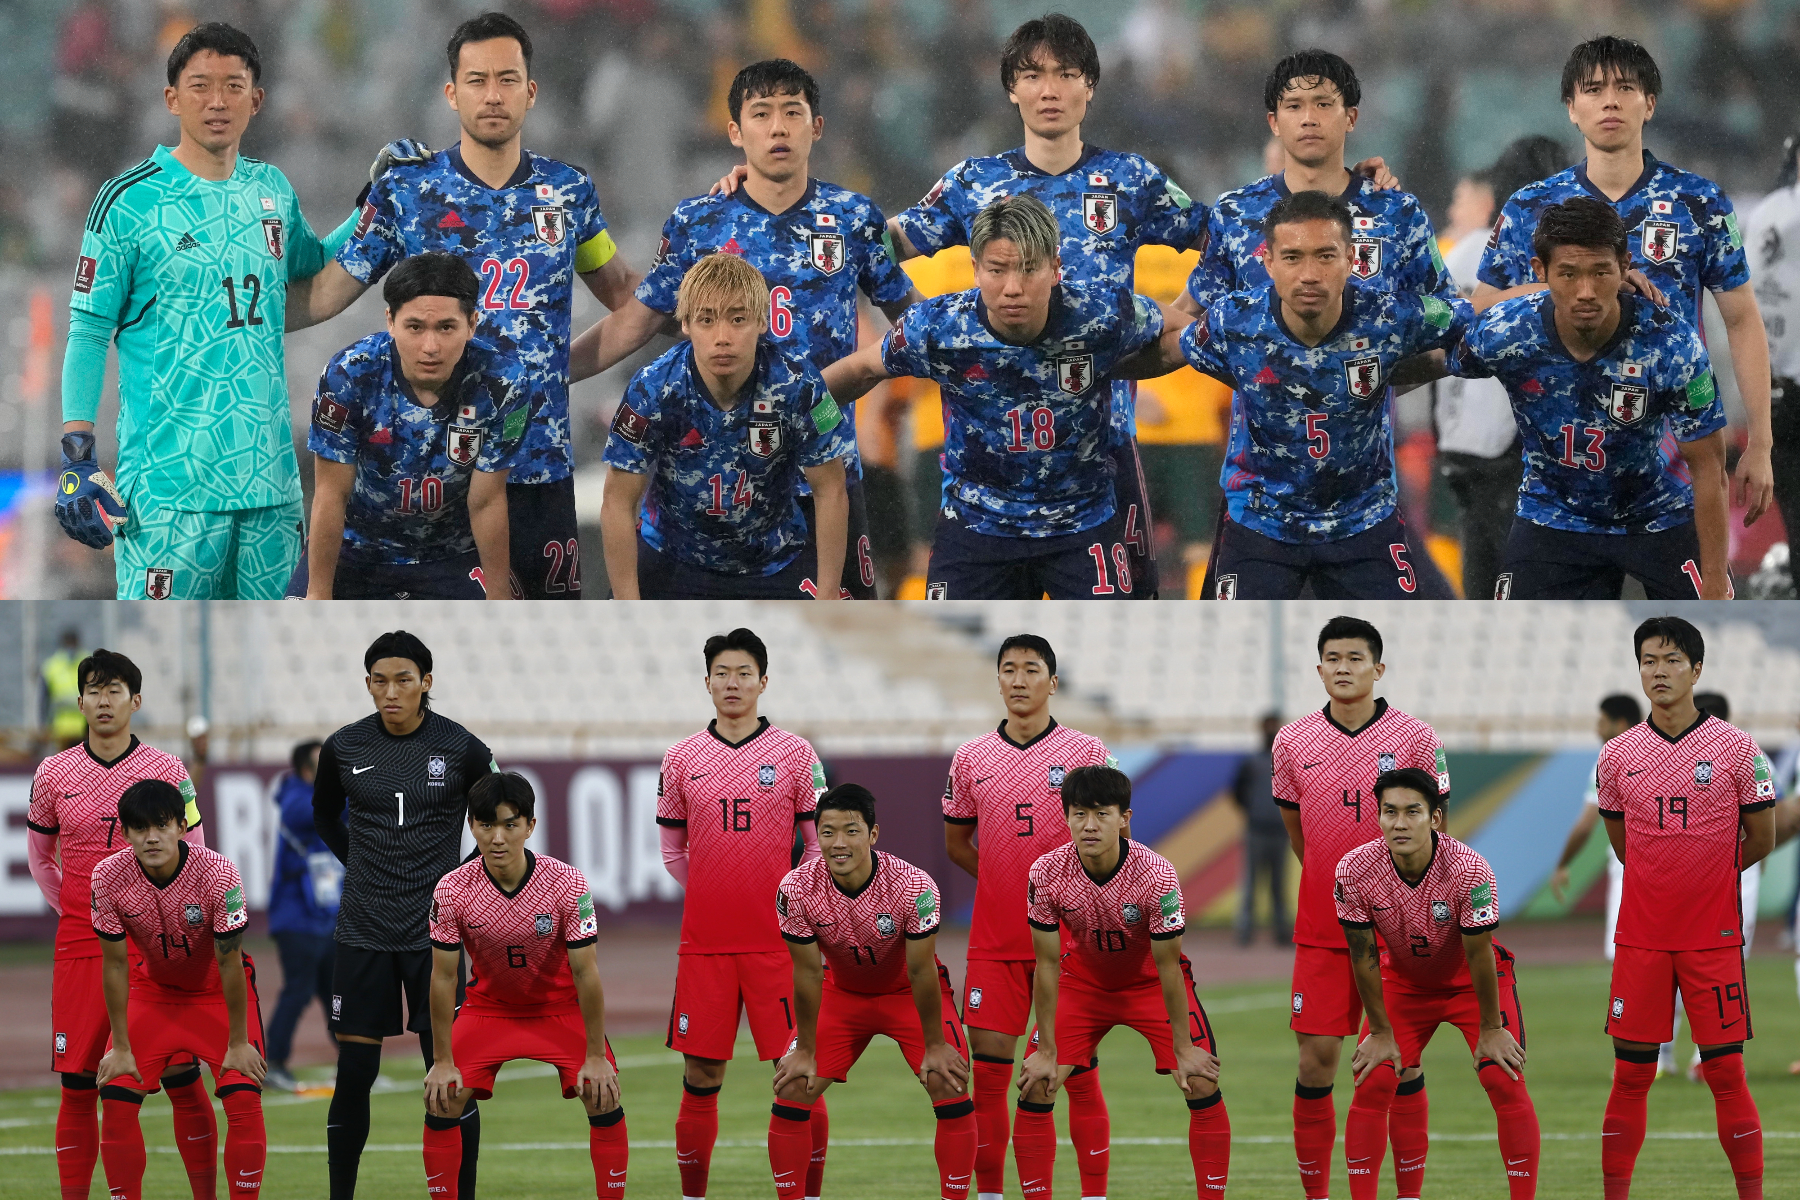 アジア勢は 最下位 に評価 カタールw杯 優勝オッズ 海外公開で韓国誌が反応 フットボールゾーン